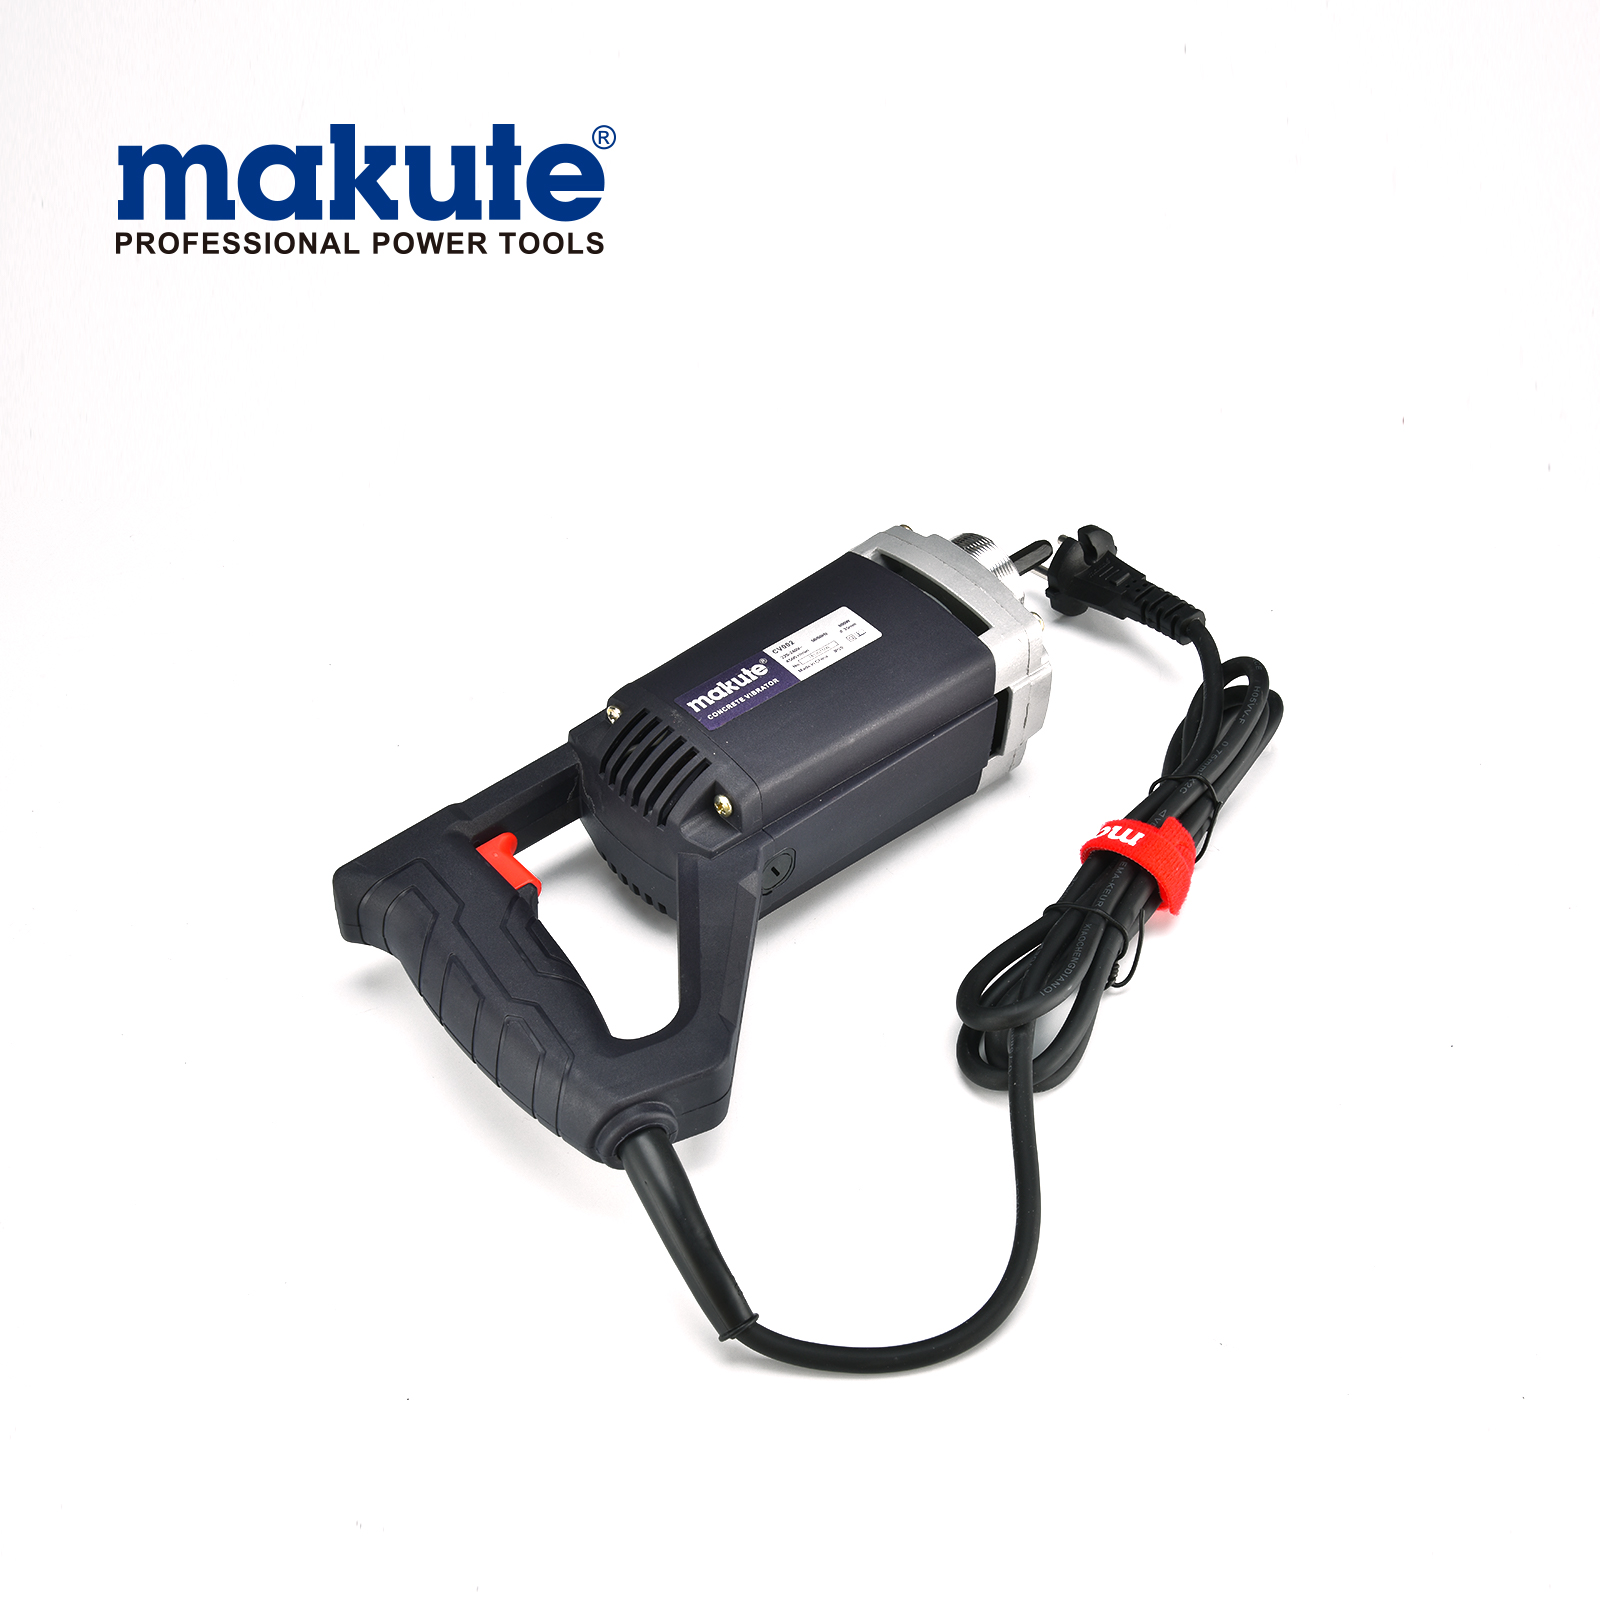 Nuevo vibrador de hormigón elétrico portátil de alta calidad Makute 800w